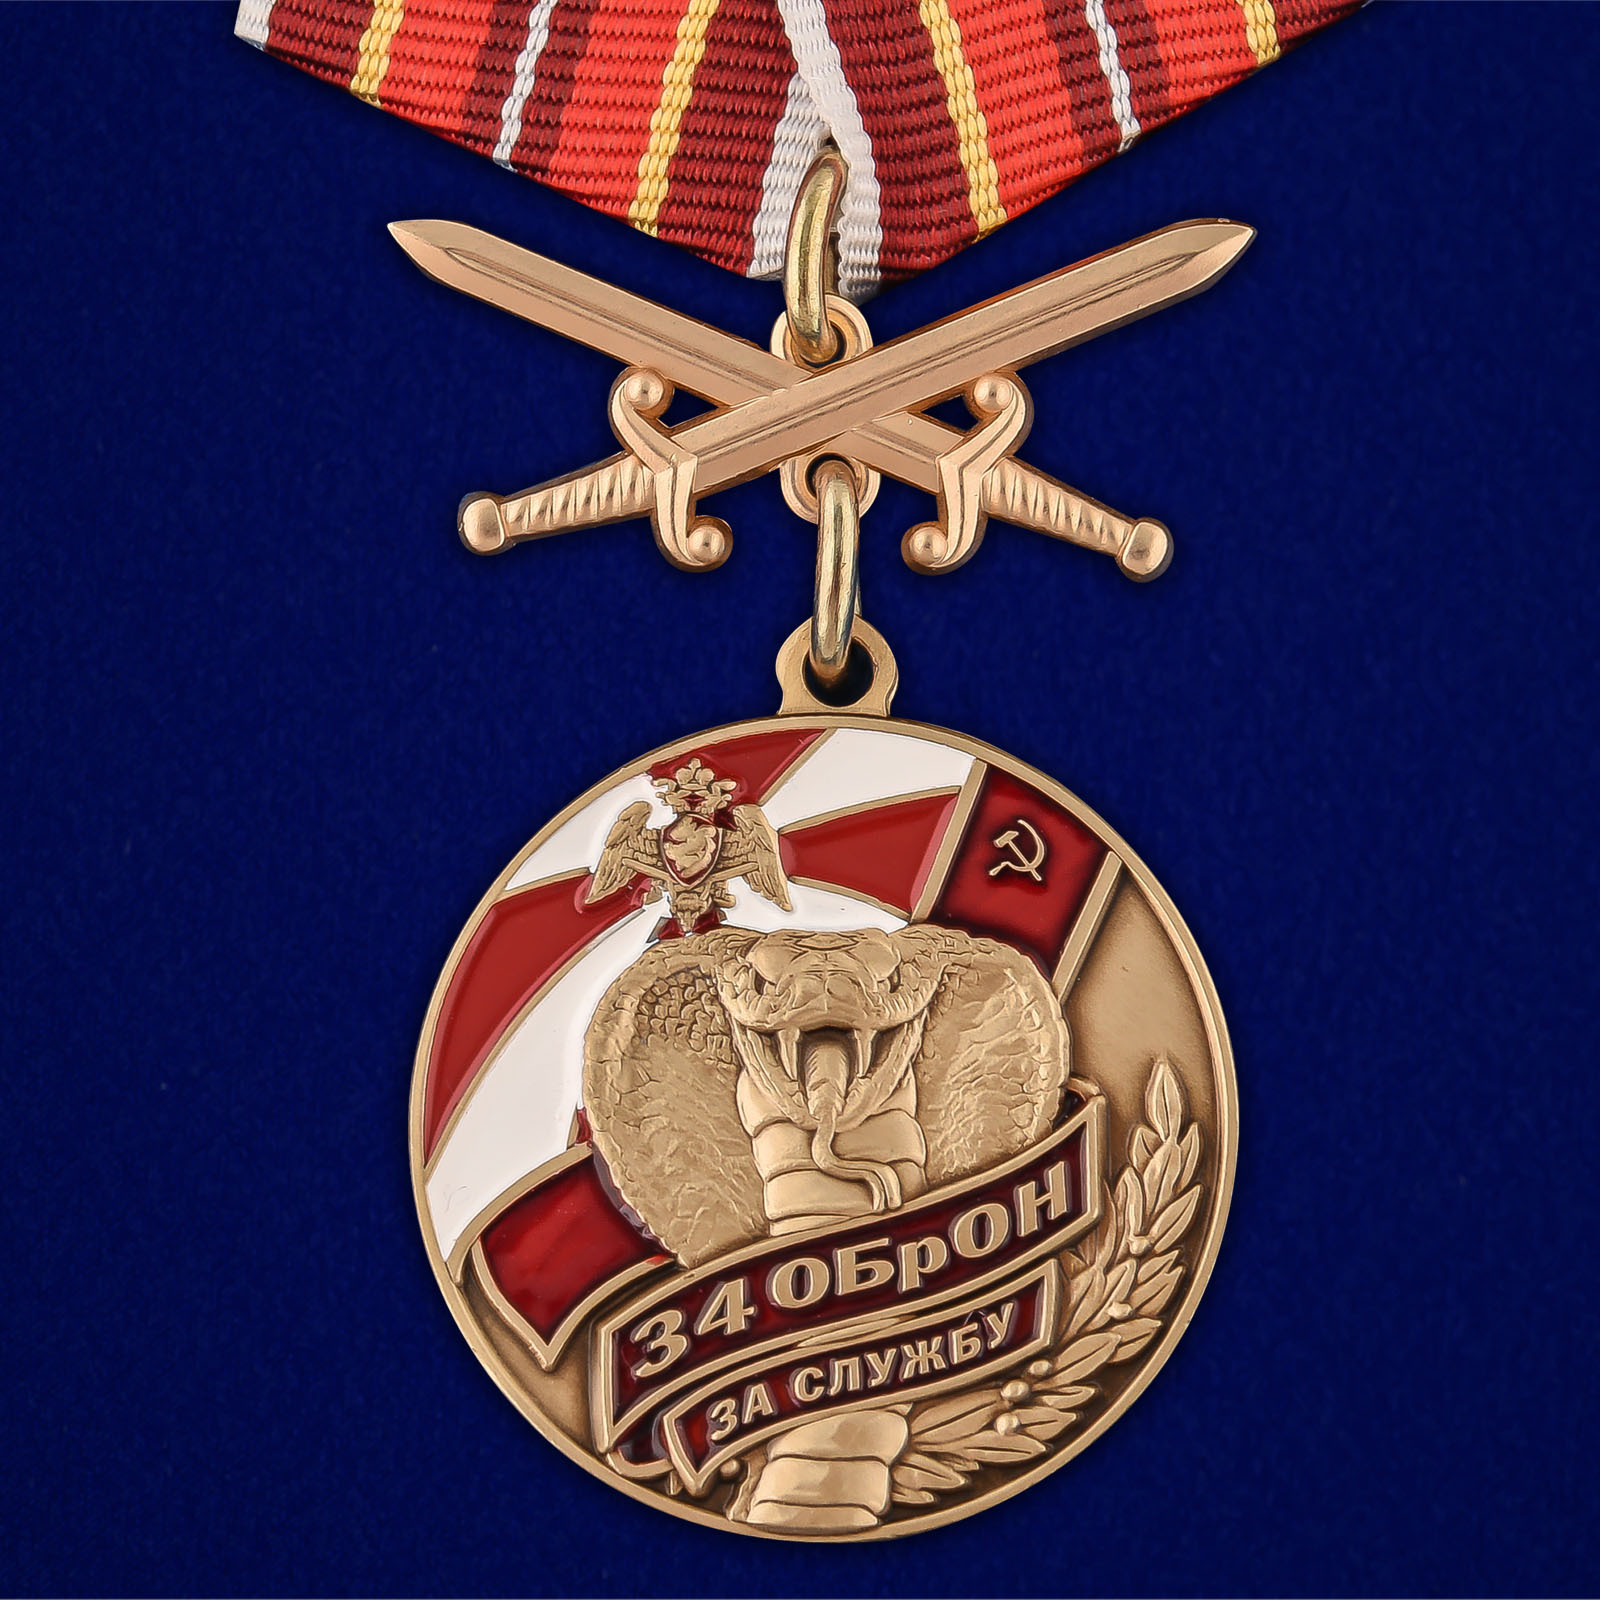 Купить медаль За службу в 34 ОБрОН онлайн выгодно